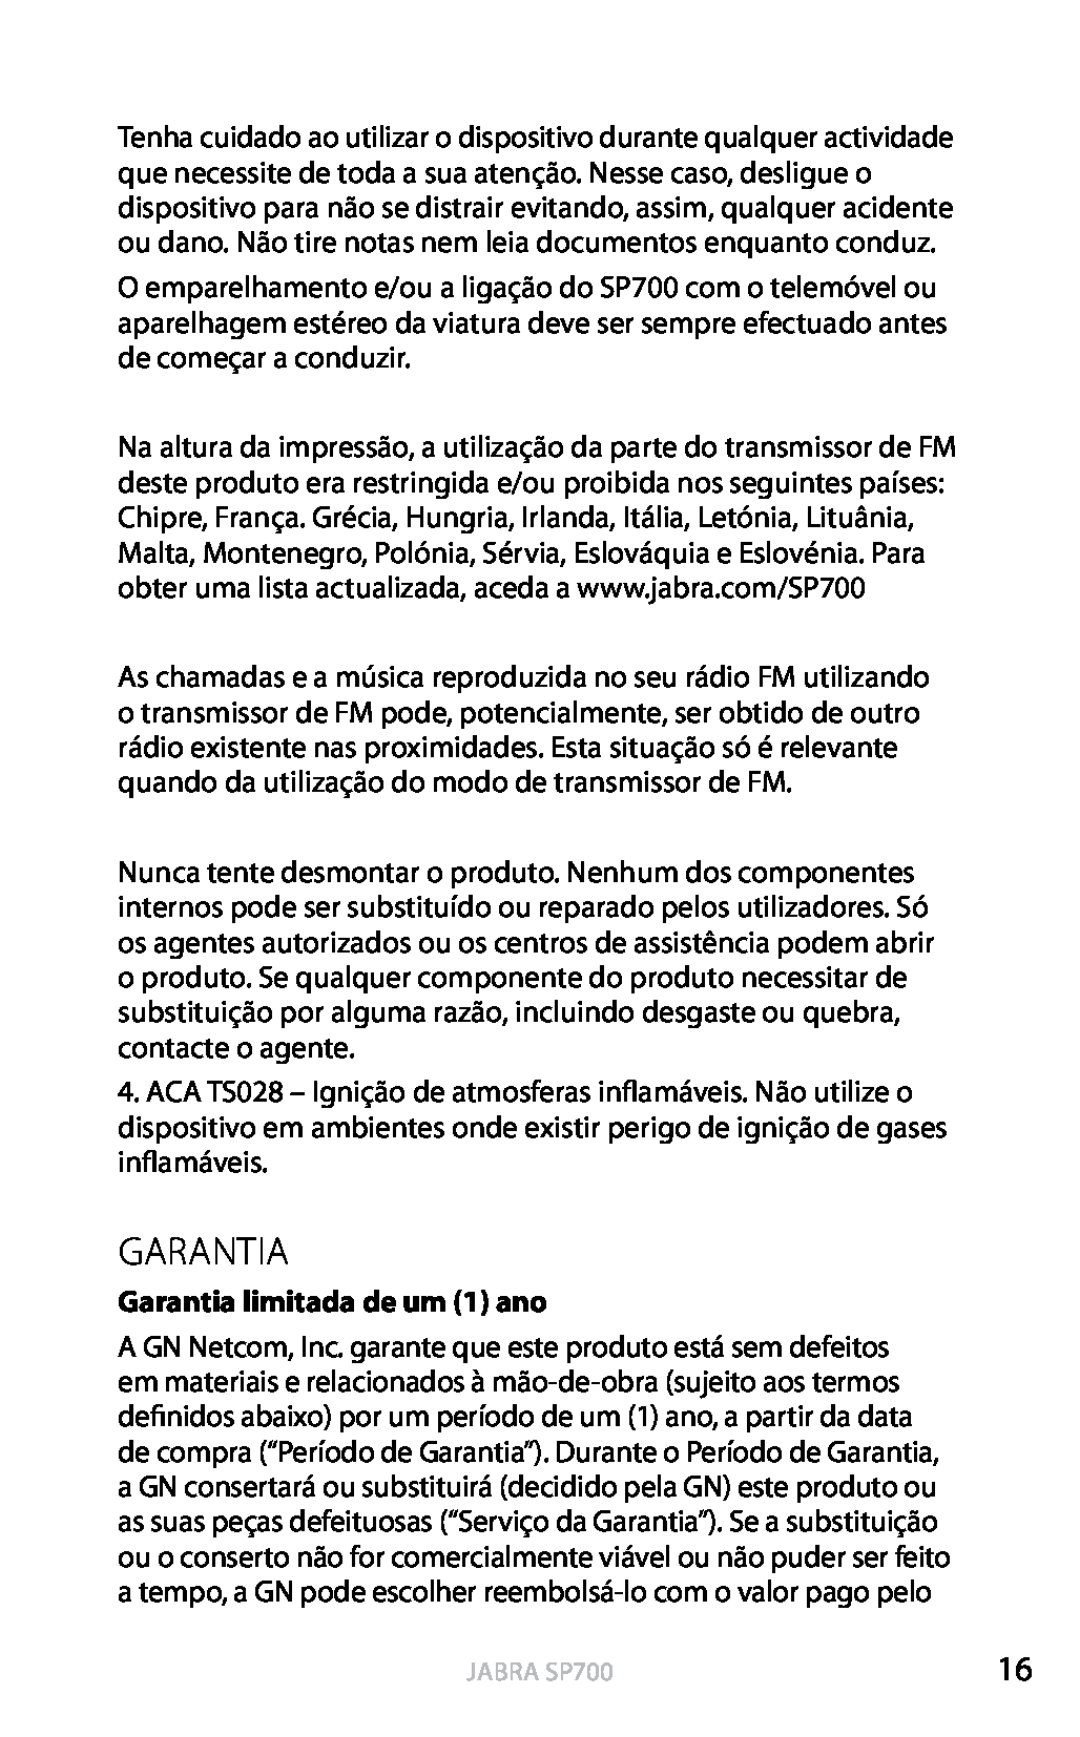 Jabra SP700 user manual Garantia limitada de um 1 ano, Português 